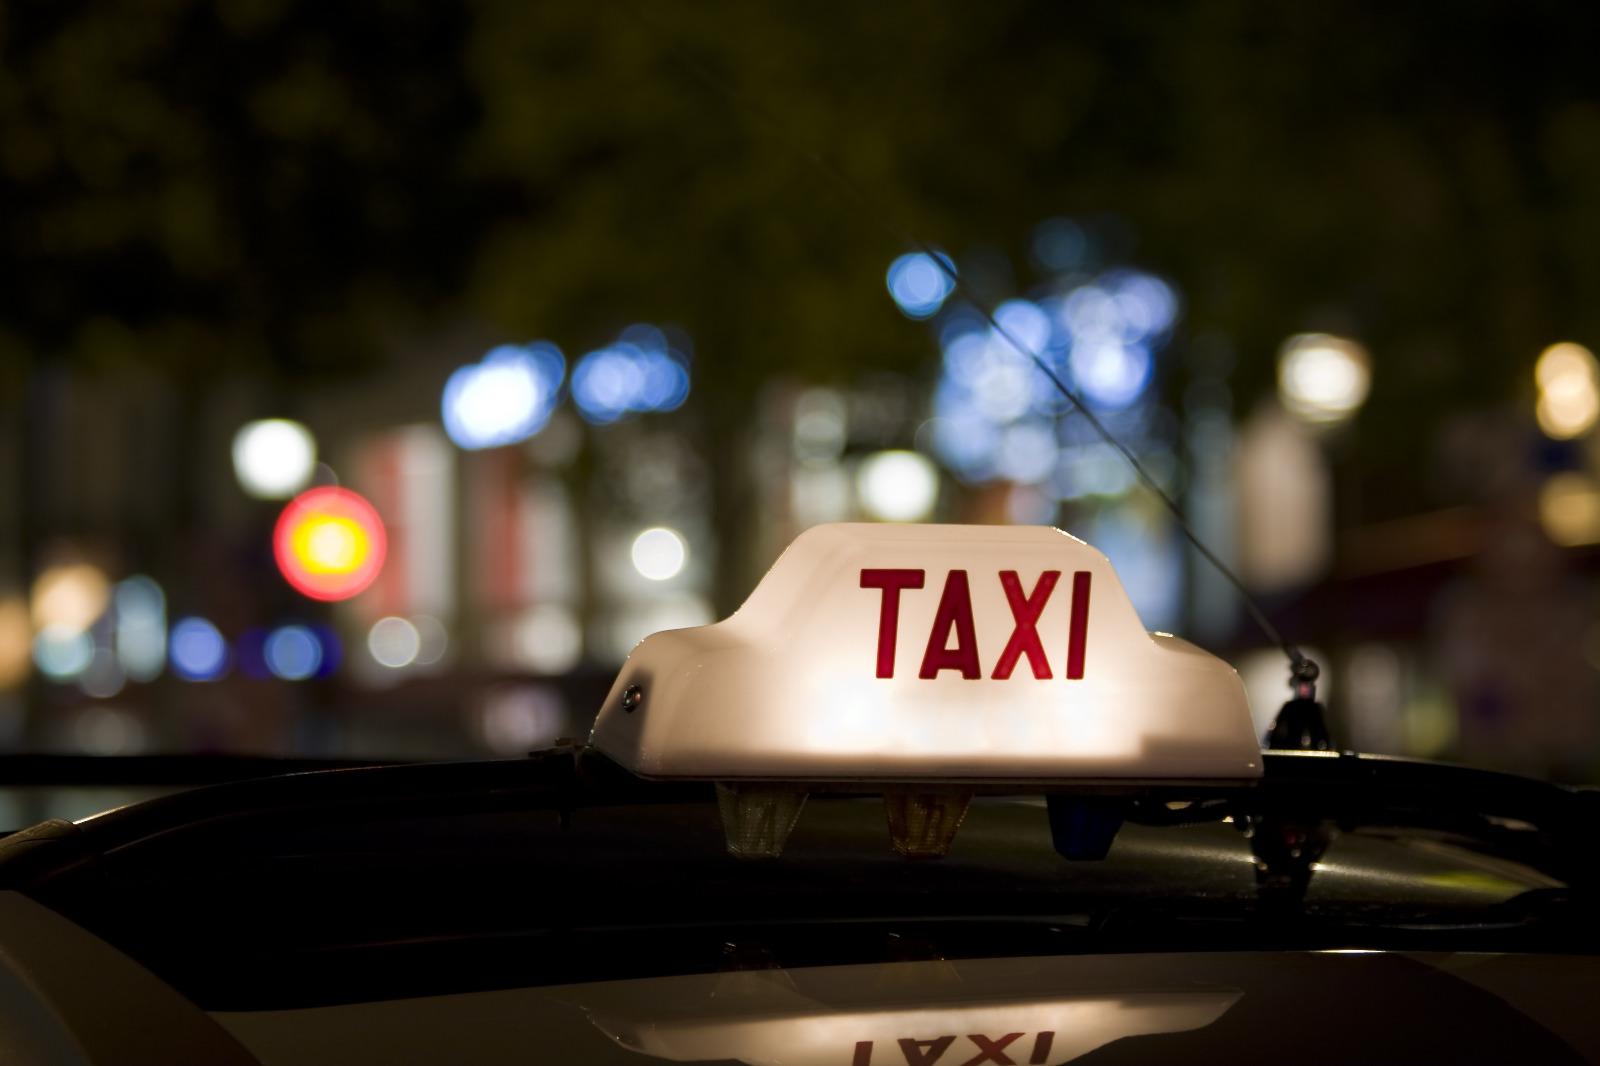 Réservation d'un taxi de nuit